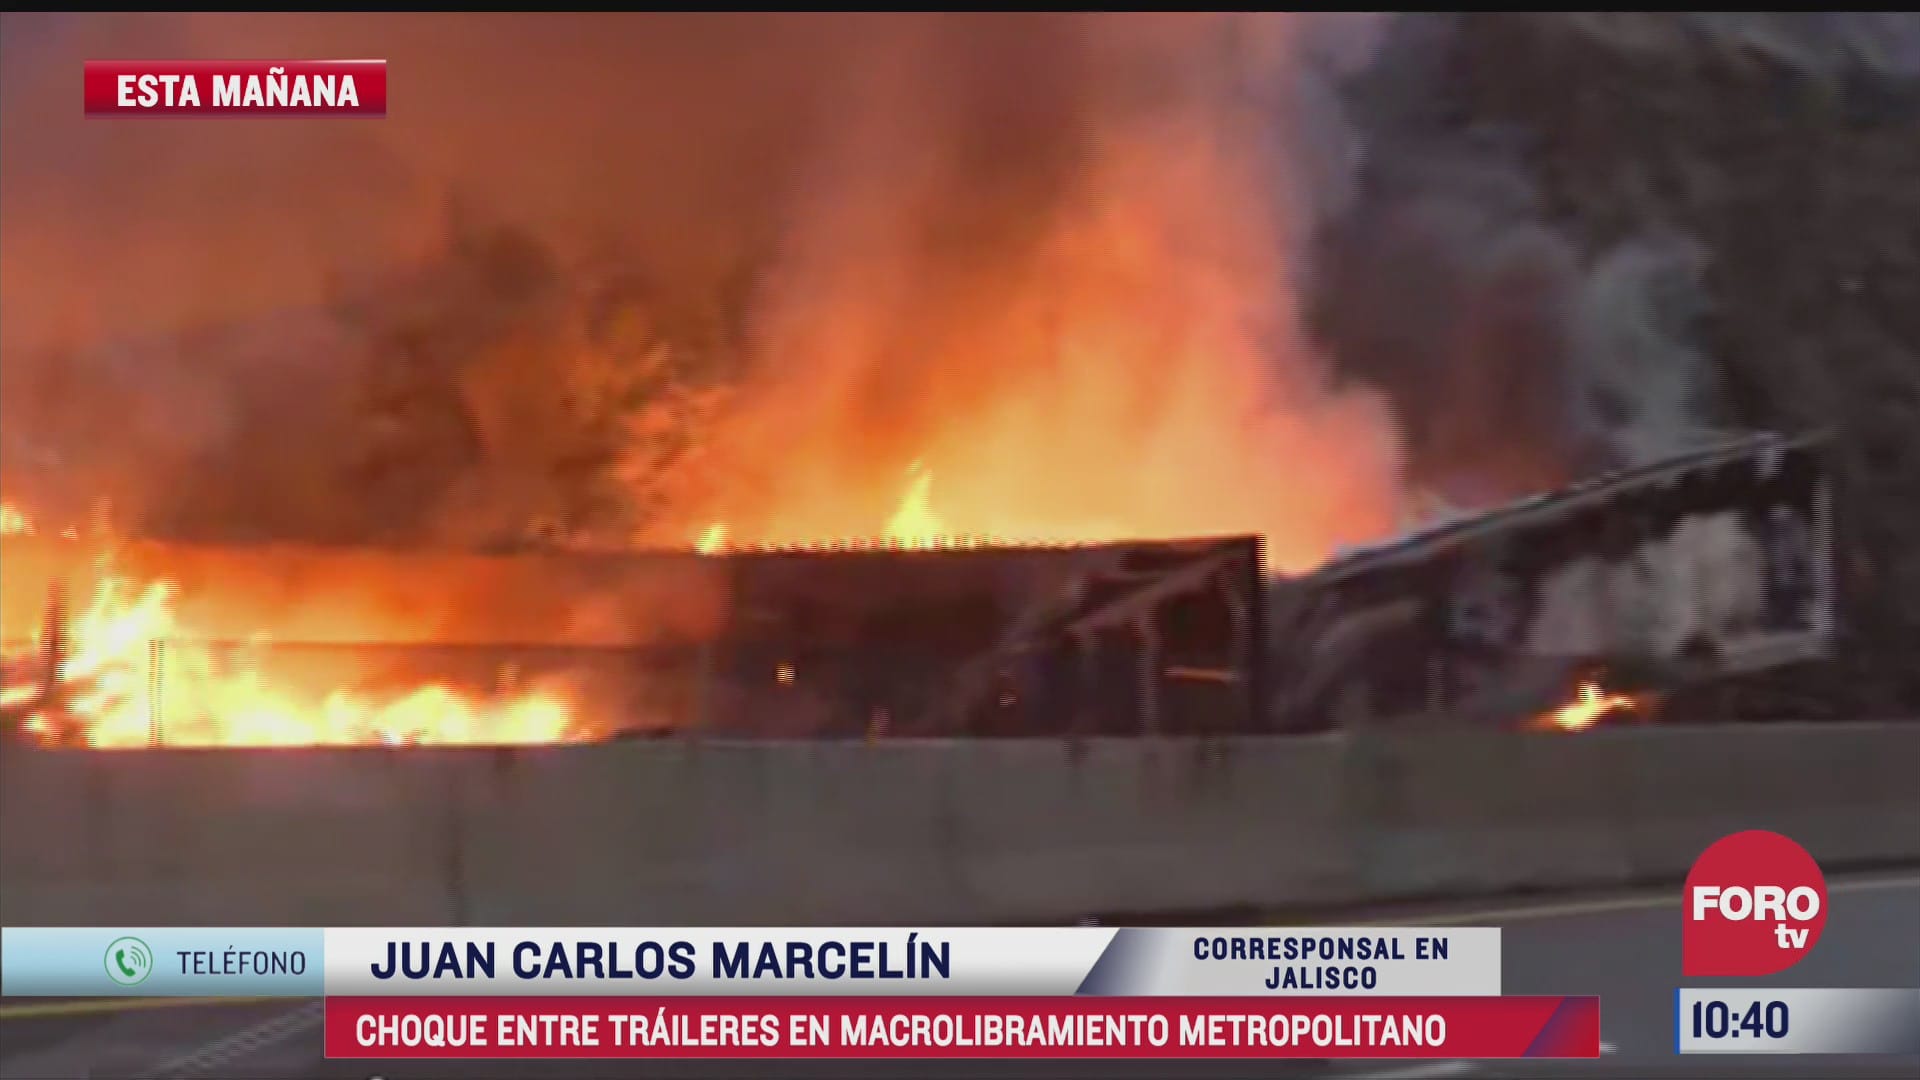 choque de traileres provoca incendio en macrolibramiento en jalisco hay cuatro muertos